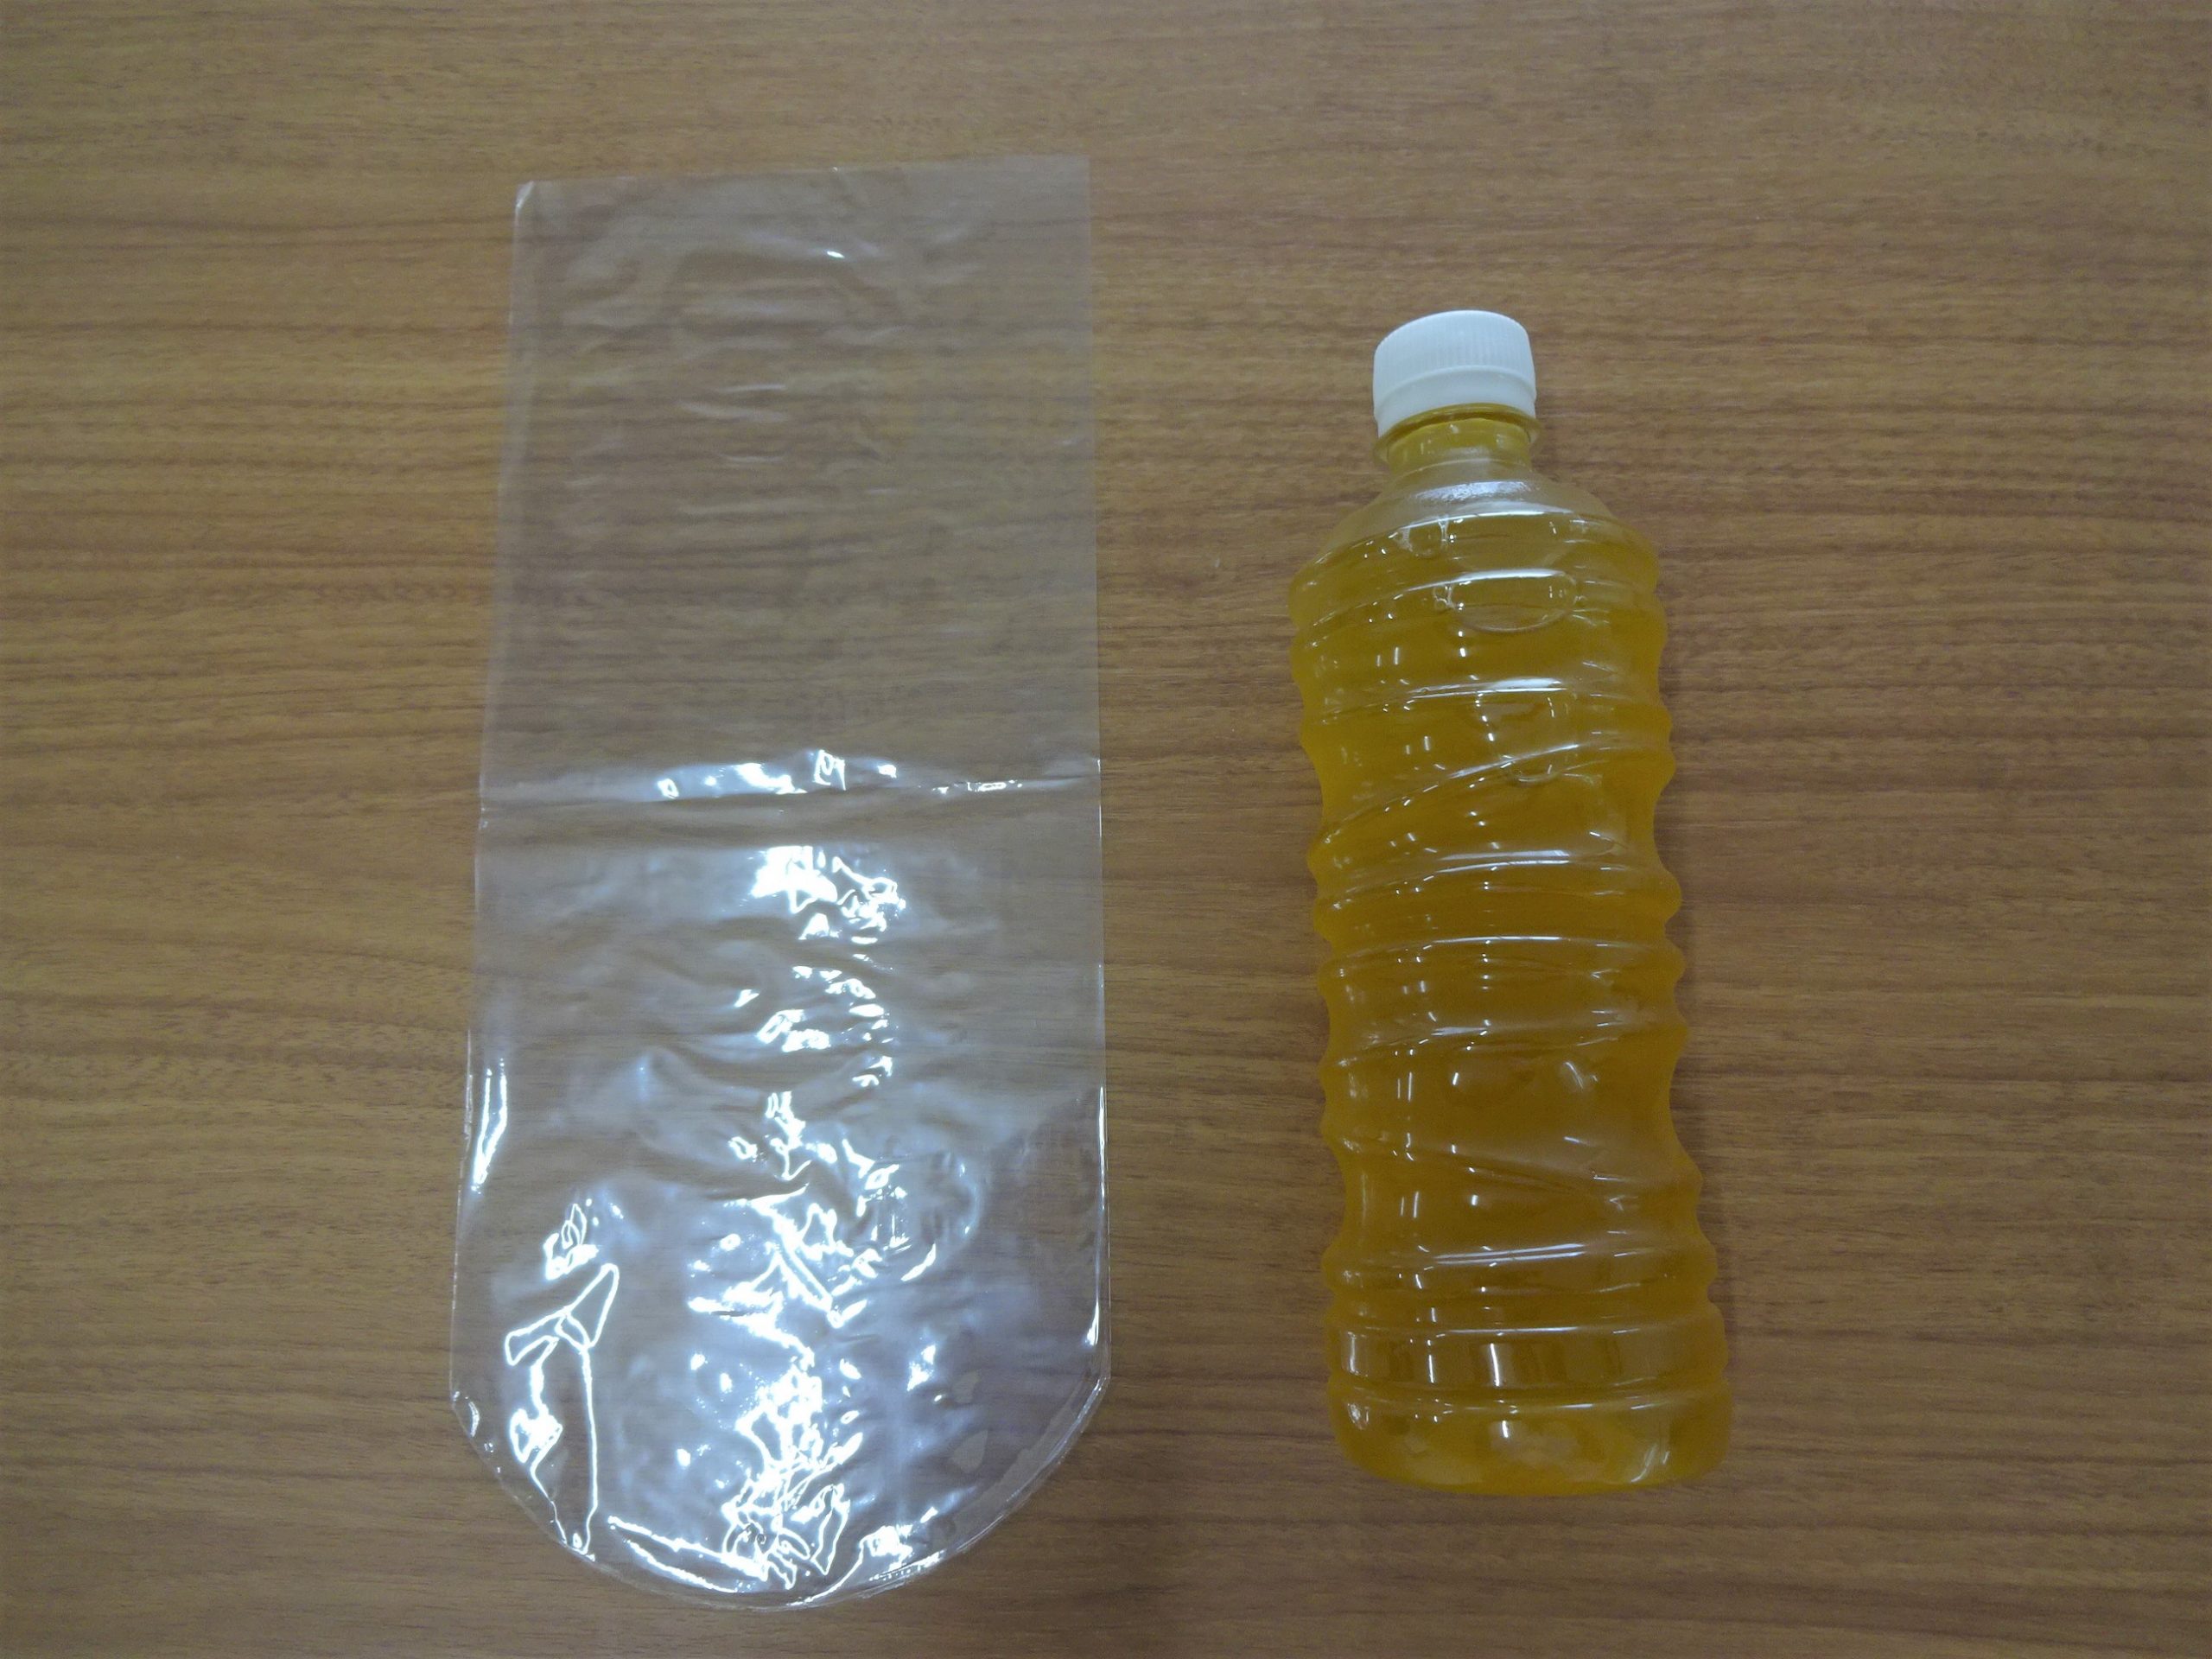 規格品のシュリンク袋(品番:B-2)とペットボトル